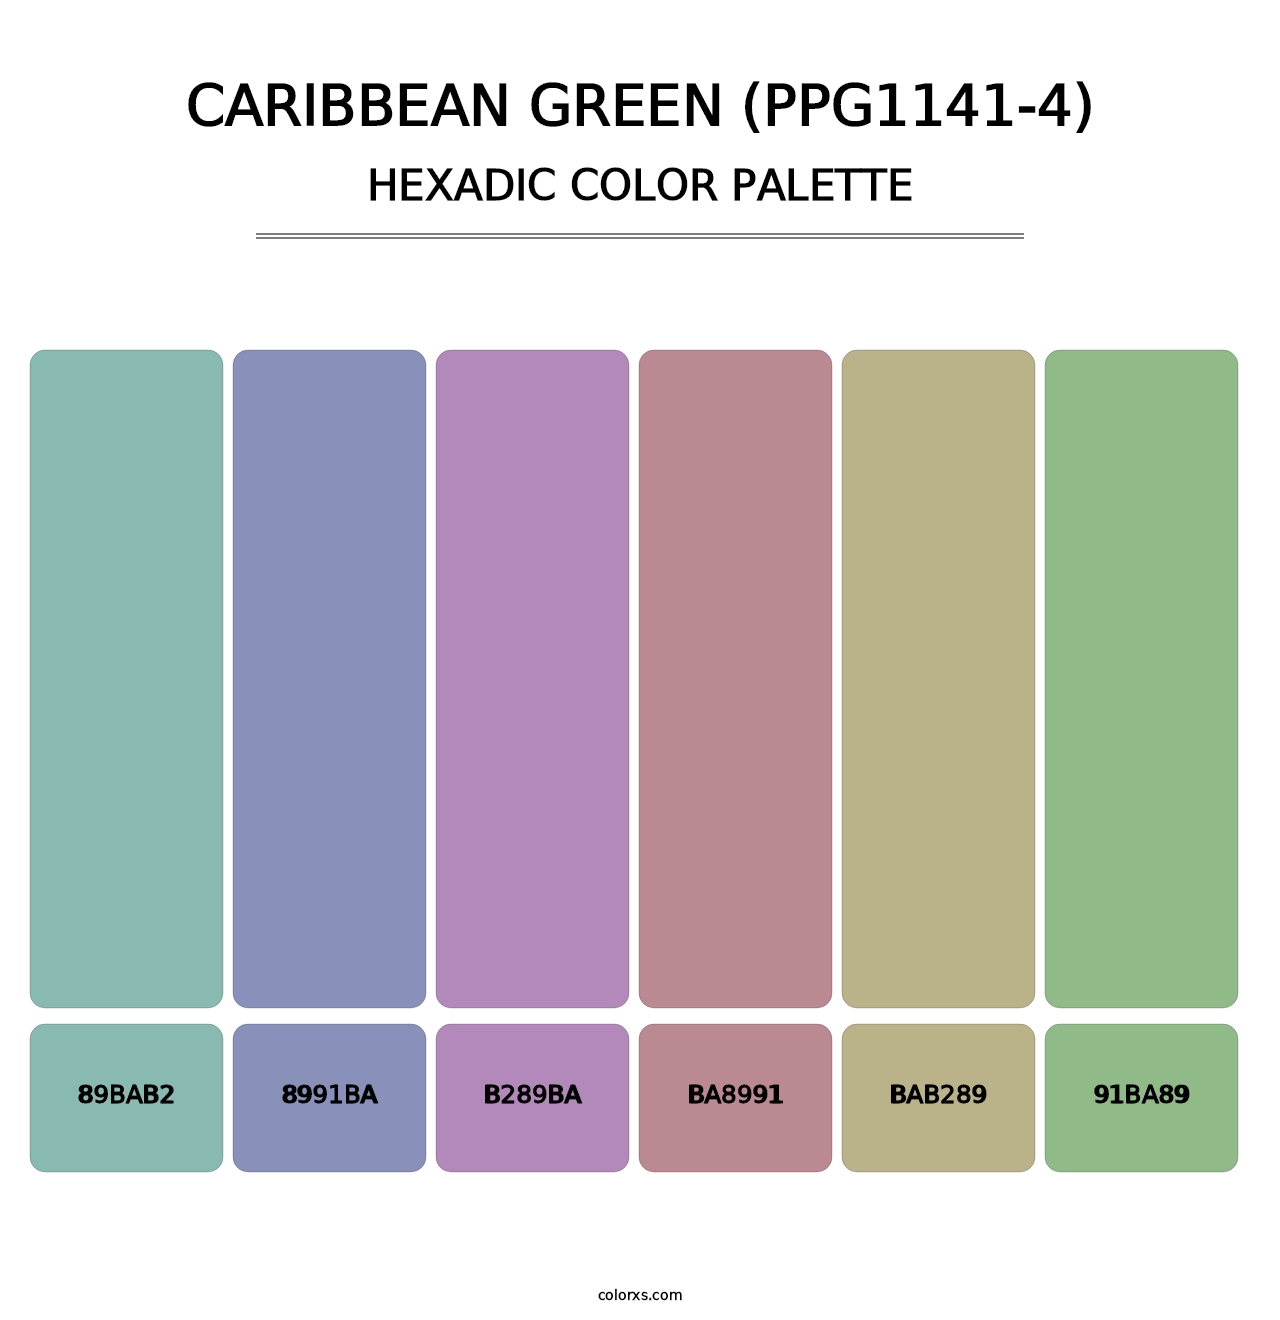 Caribbean Green (PPG1141-4) - Hexadic Color Palette